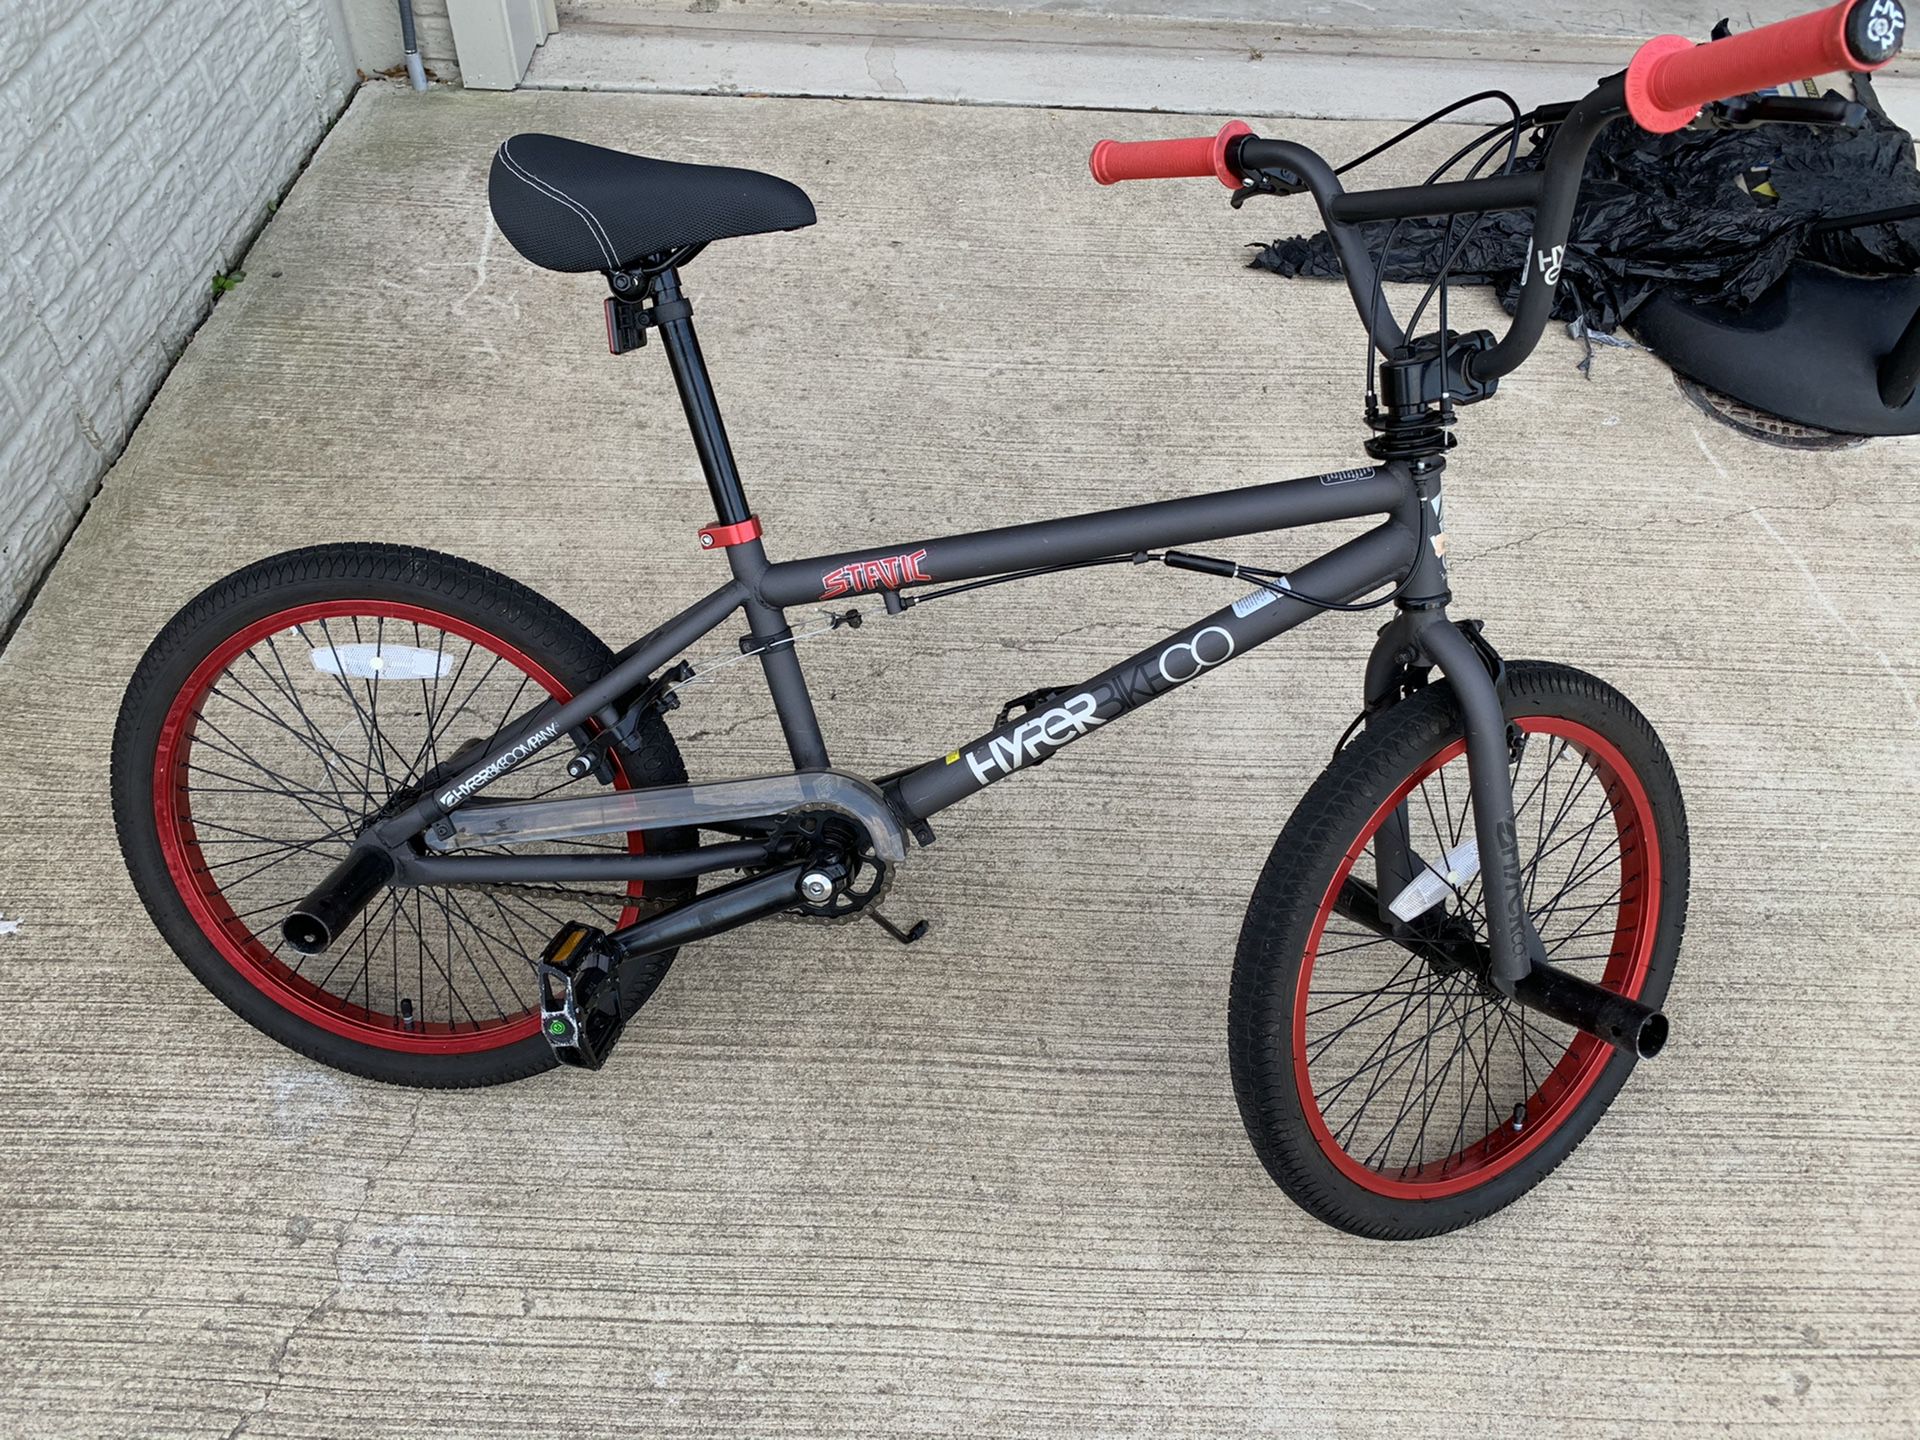 18” Hyper bike for kids